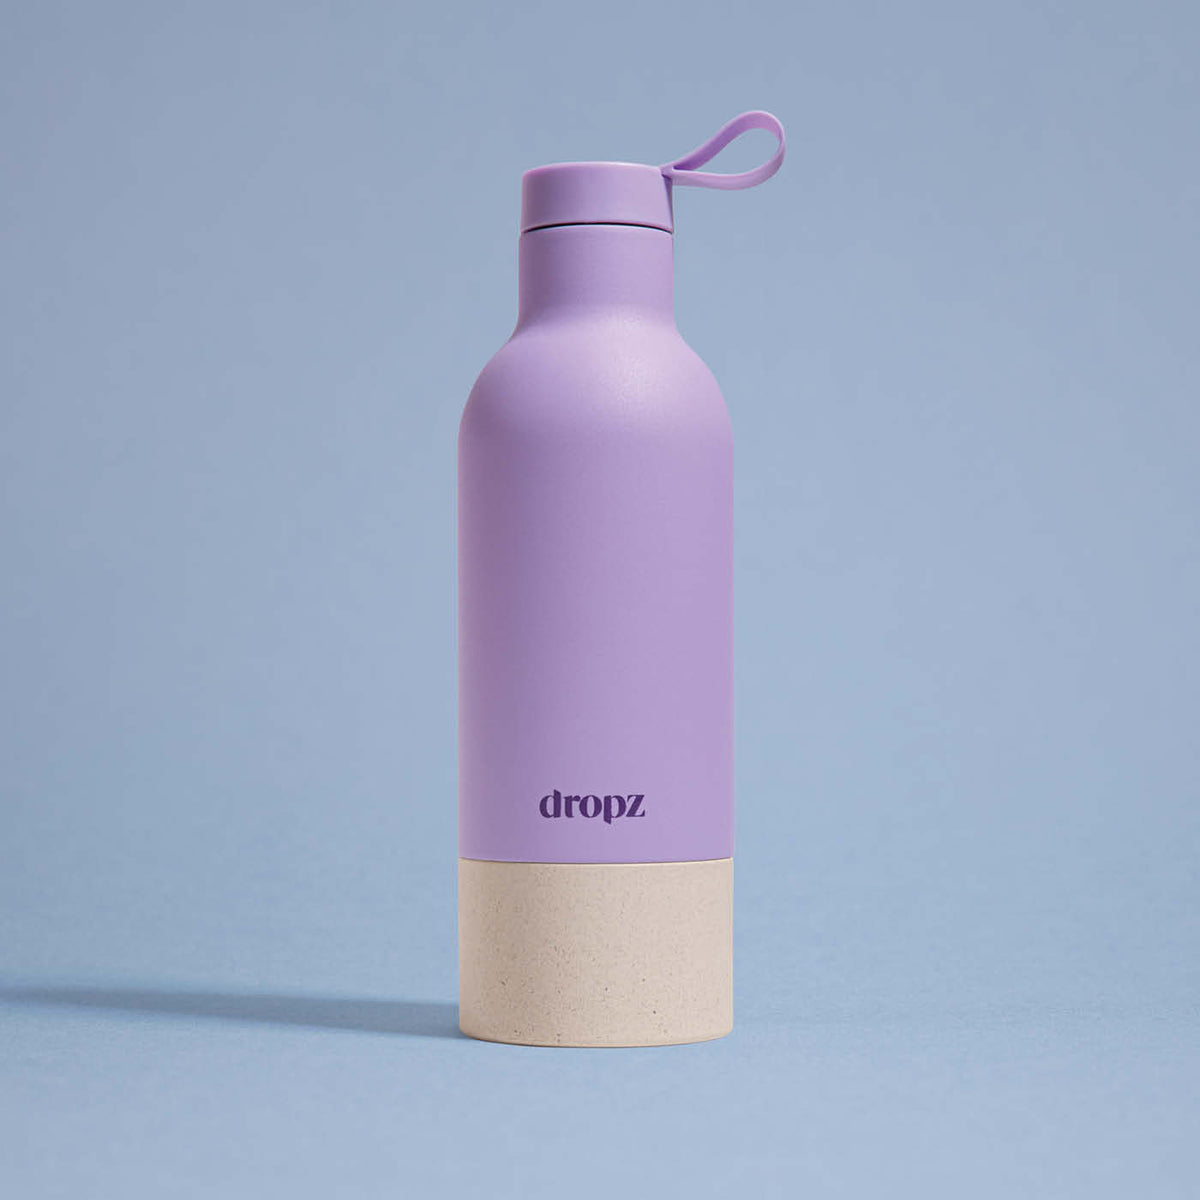 dropz Bottle lavendel - 0.5L with storage compartment